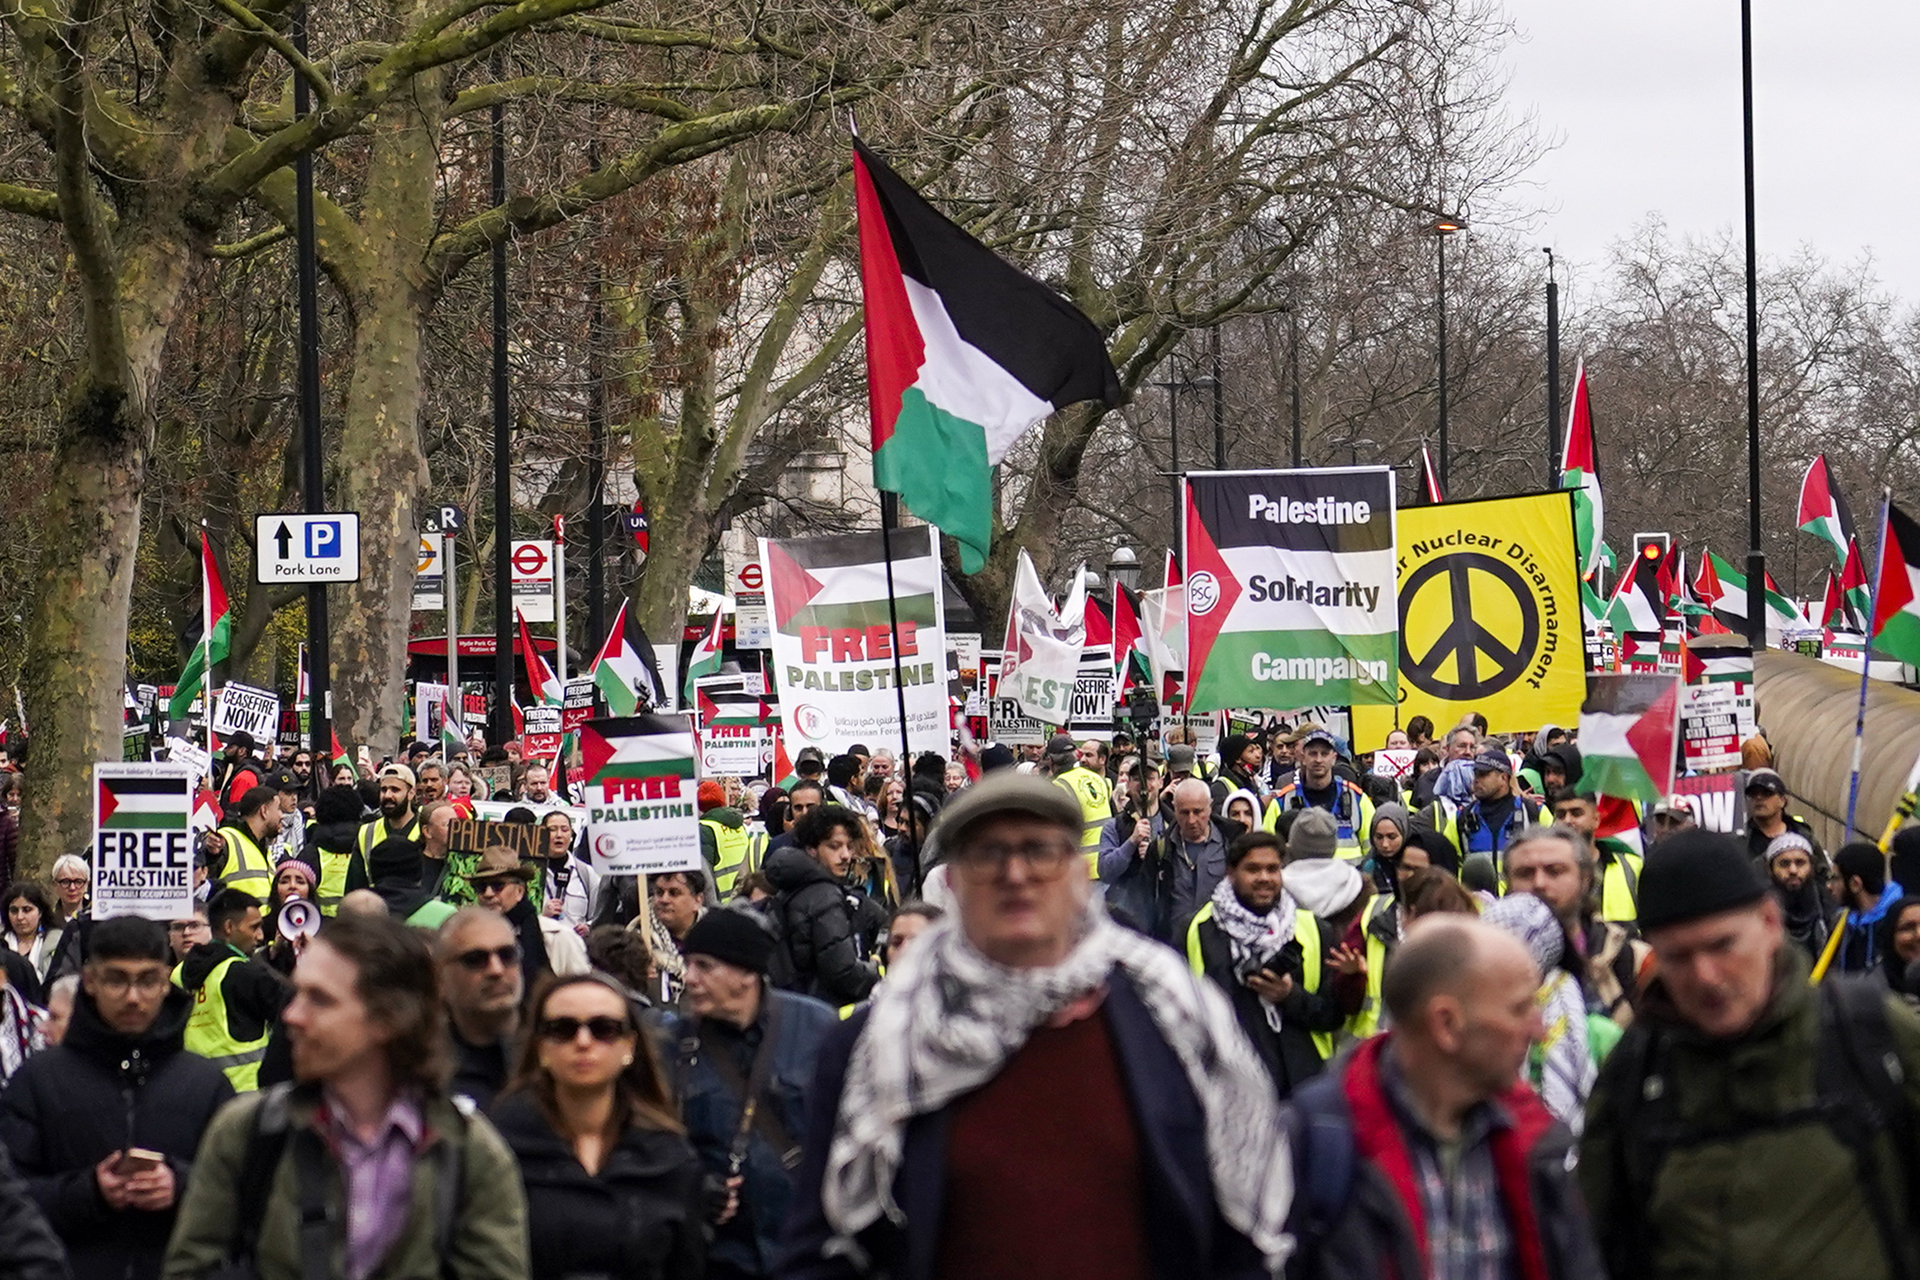 Sondage révèle les jeunes Britanniques majoritairement contre Israël